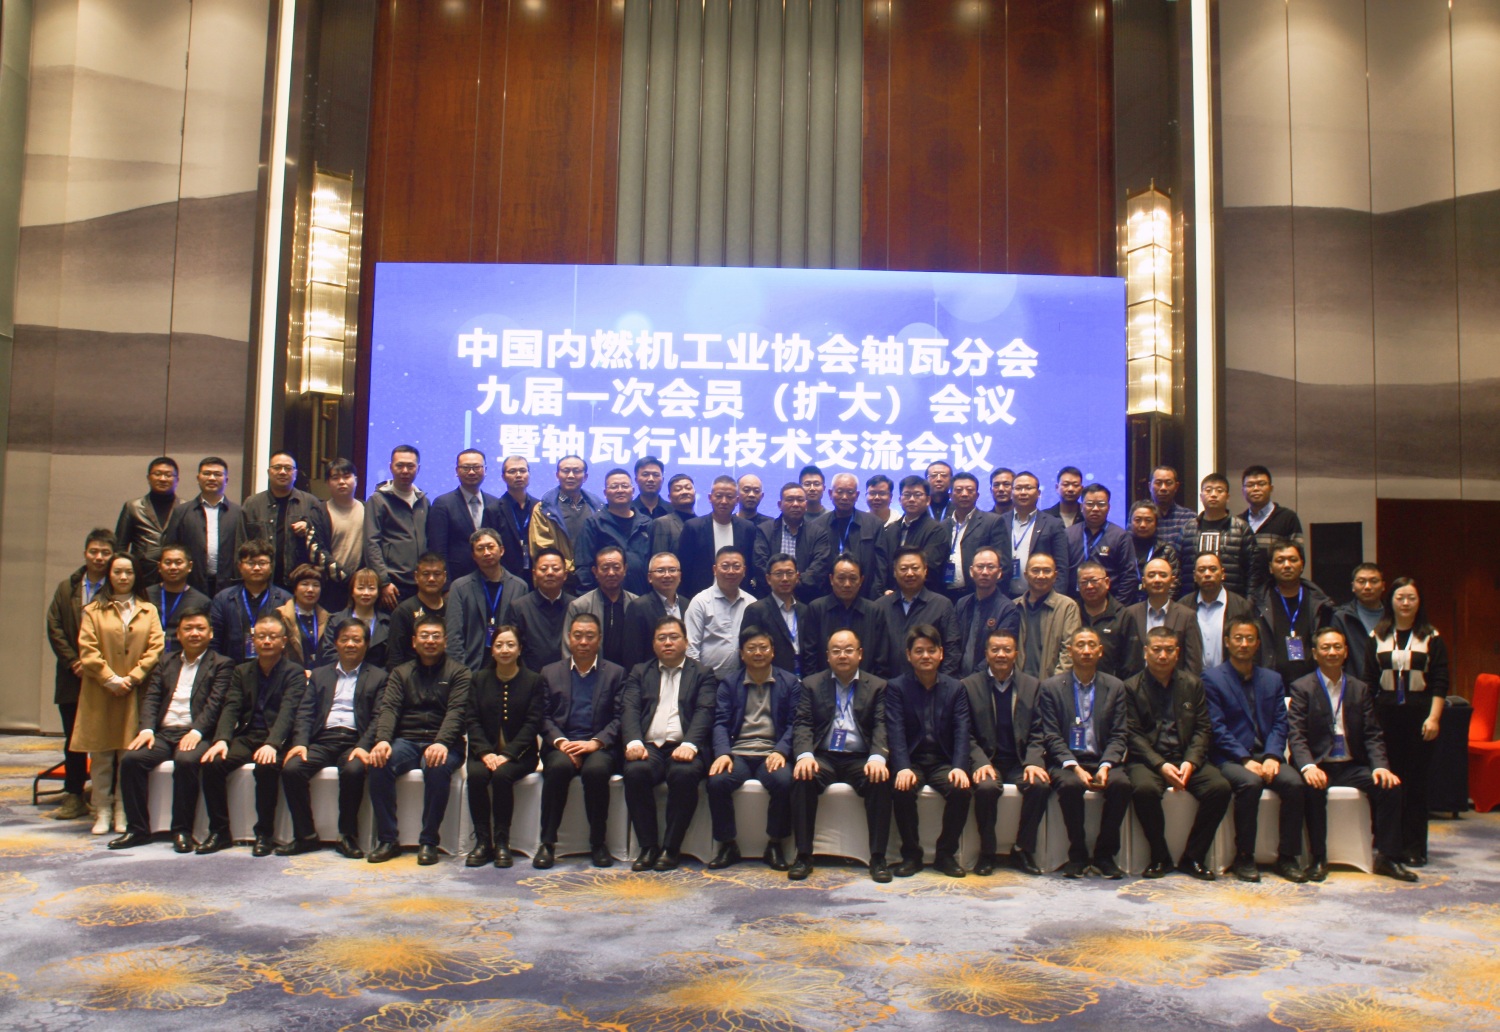 Девятое (расширенное) собрание членов девятой сессии Китайской ассоциации производителей машин внутреннего сгорания состоялось в Аньхое